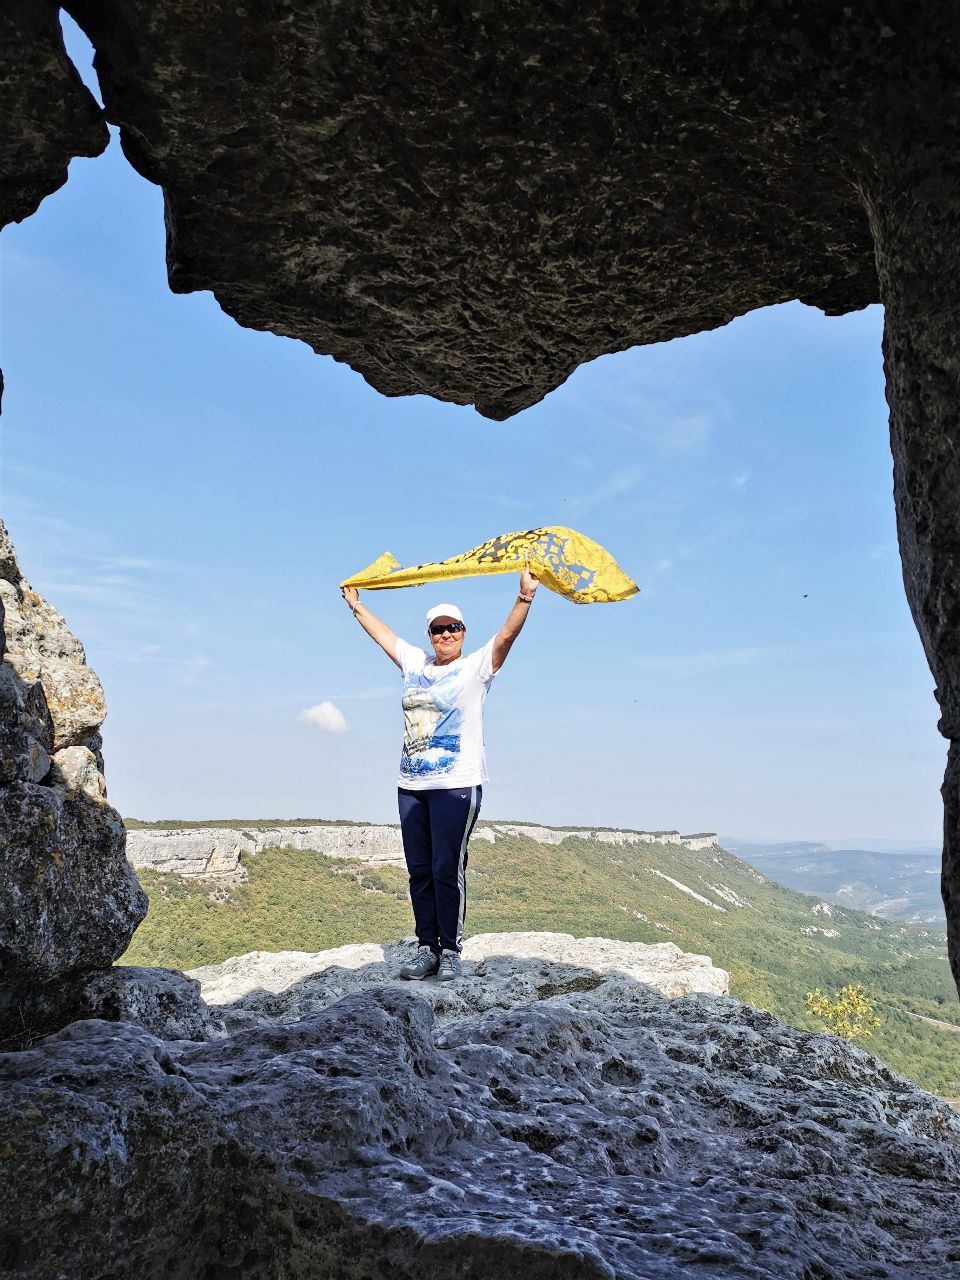 Пещера на Мангупе - вторая точка действия. - Этот изумительно- красивый Крым!!!